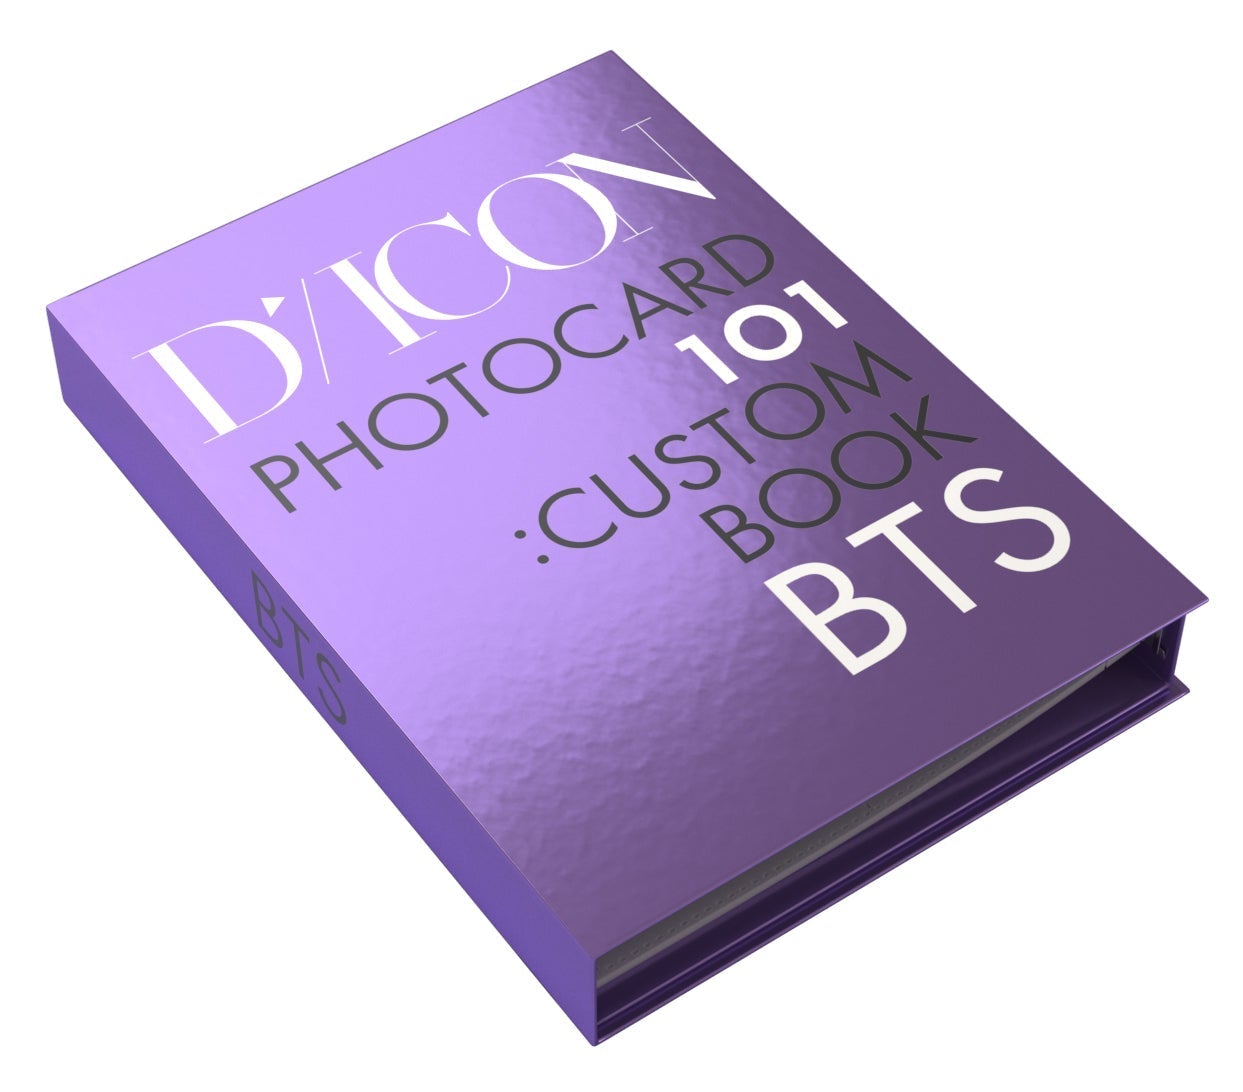 BTS DICON PHOTOCARD CUSTOM BOOK